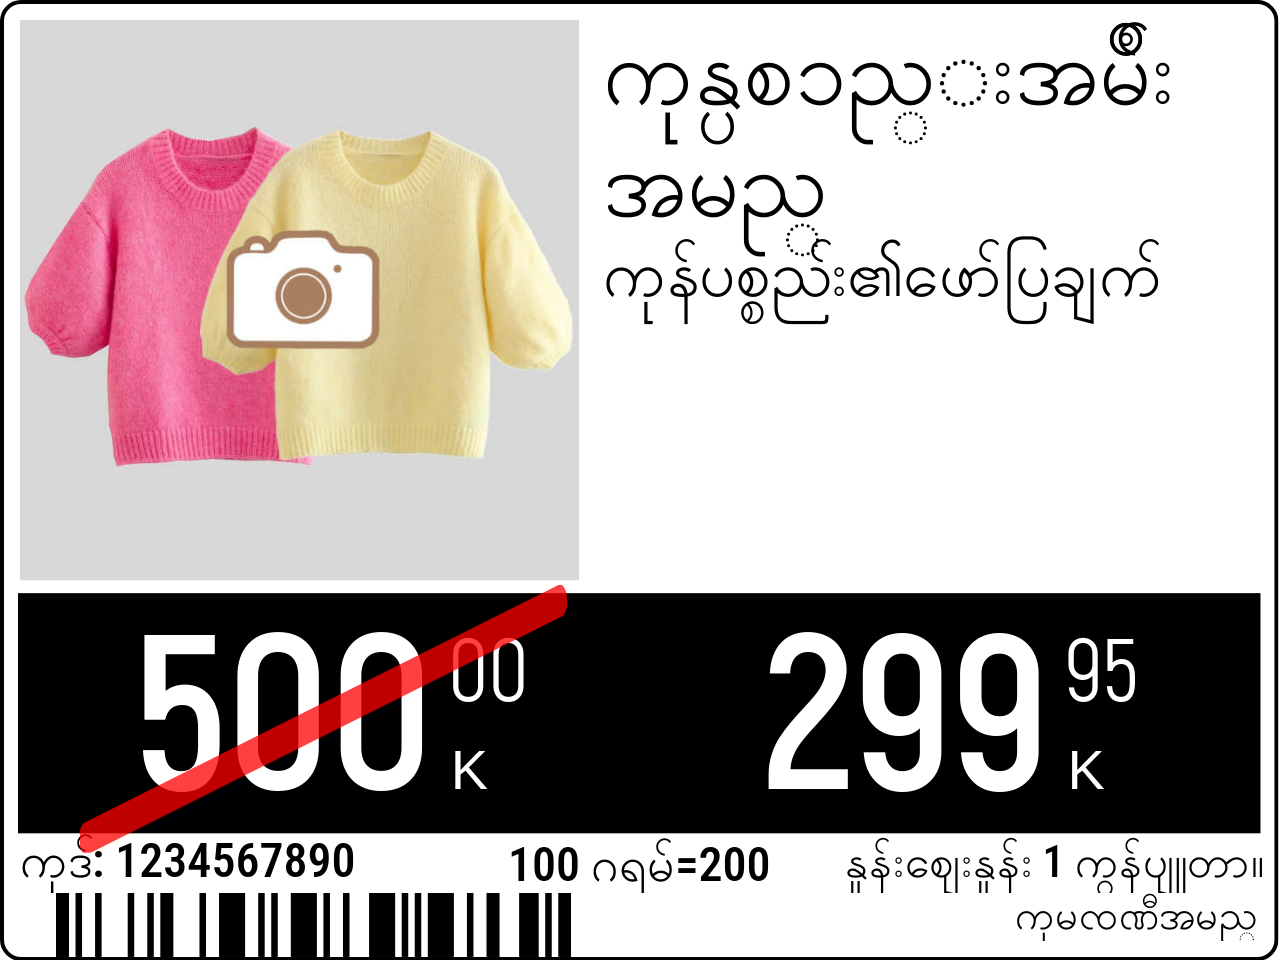 မြန်မာဘာသာ မူလနေရာ / ထုတ်ကုန်ပုံနှင့်အတူစျေးနှုန်းအမည်များ / ပရိုမိုးရှင်း